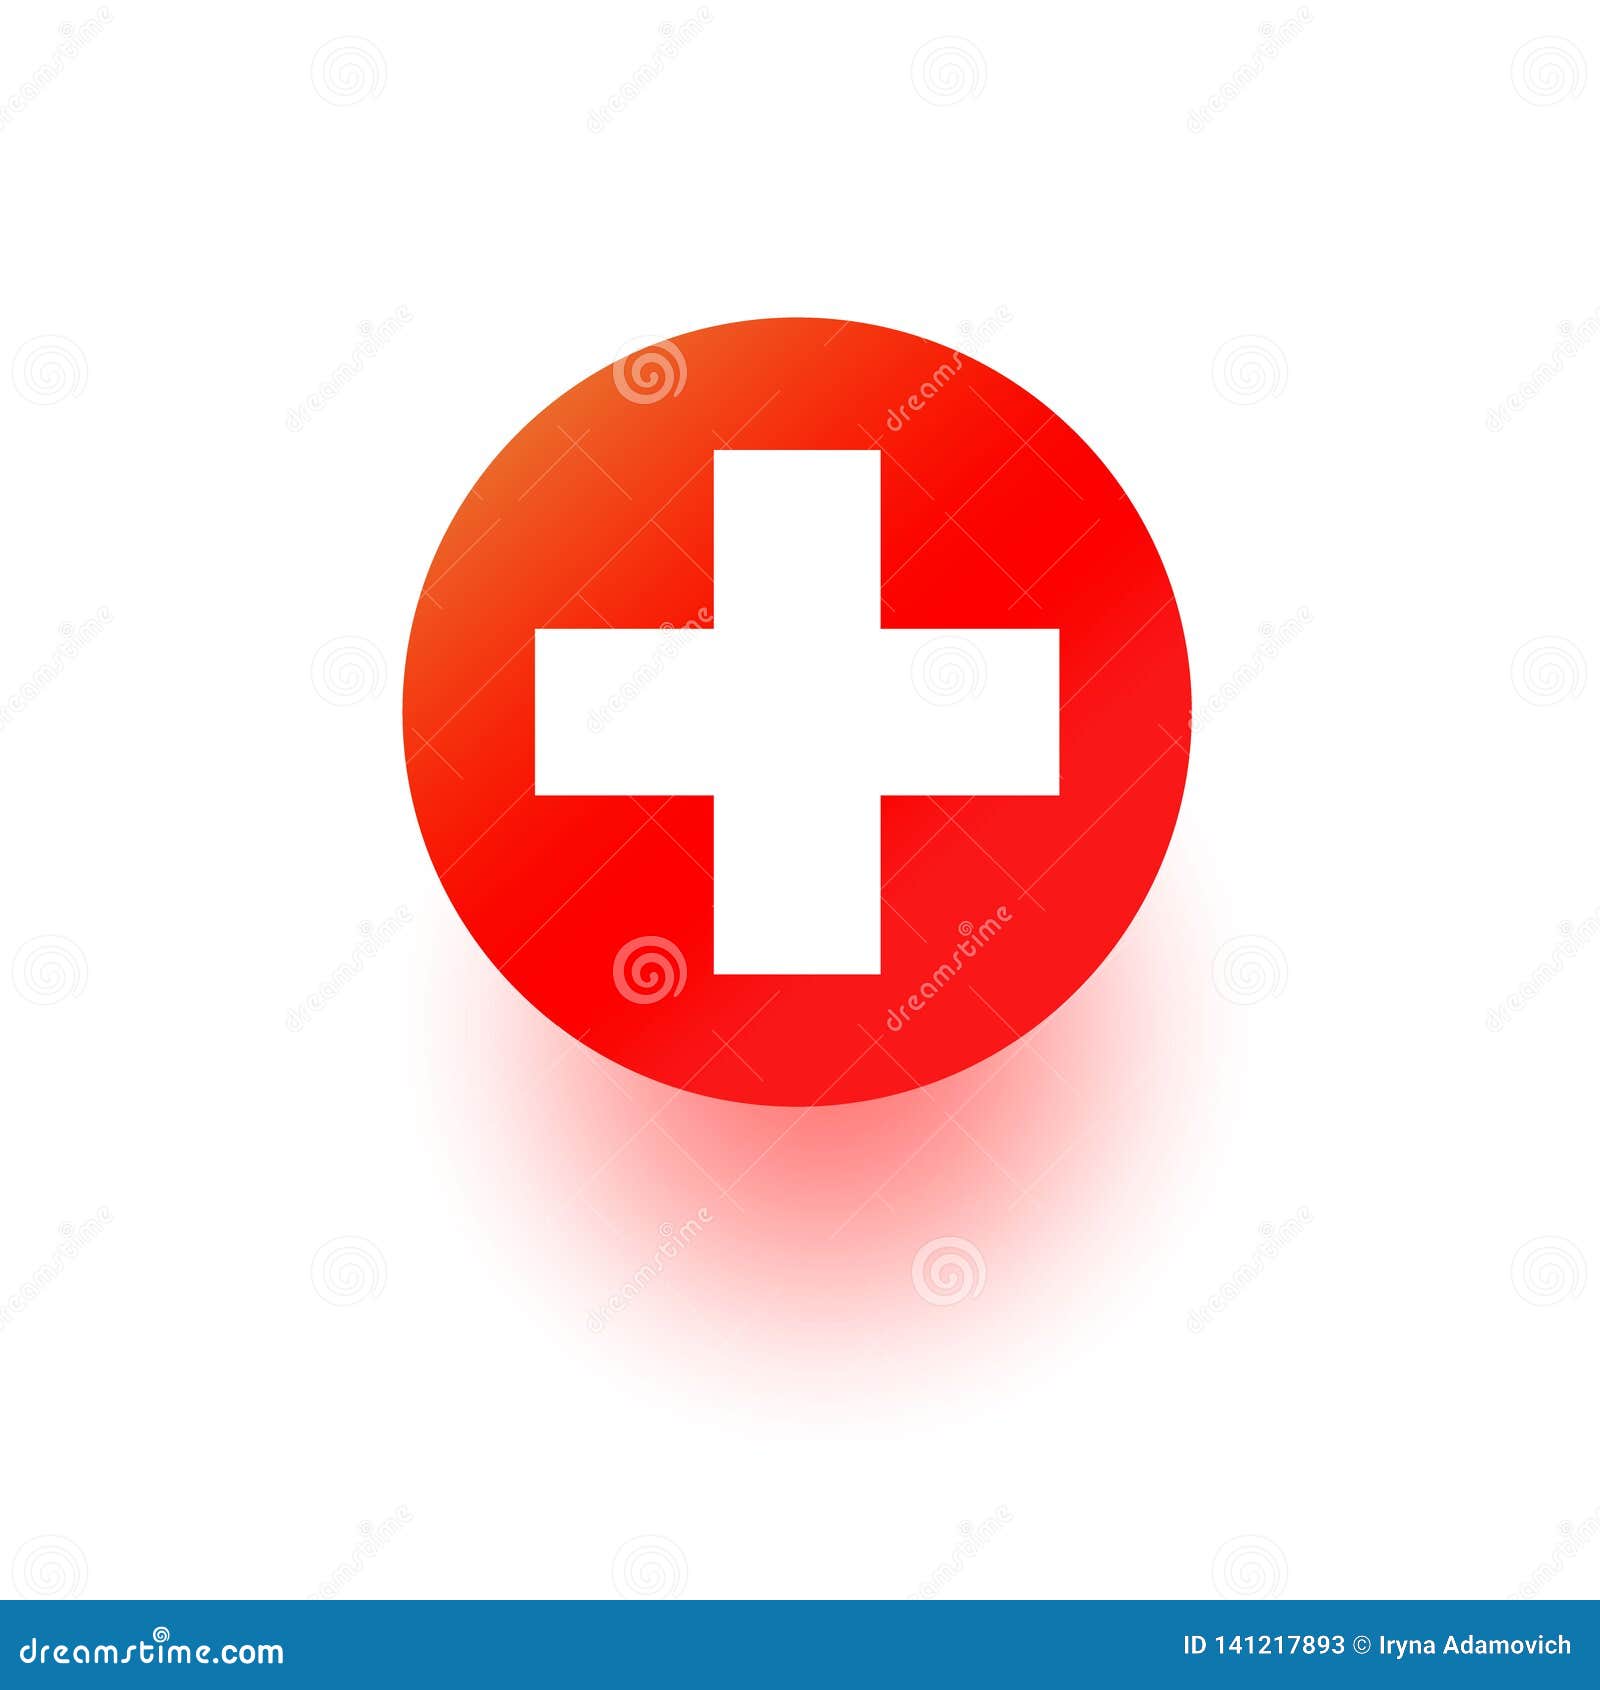 Icona Di Vettore Della Croce Rossa, Segno Dell'ospedale Simbolo Medico Del  Pronto Soccorso Di Salute Isolato Su Vhite Progettazio Immagine Stock -  Immagine di marchio, icona: 141217893